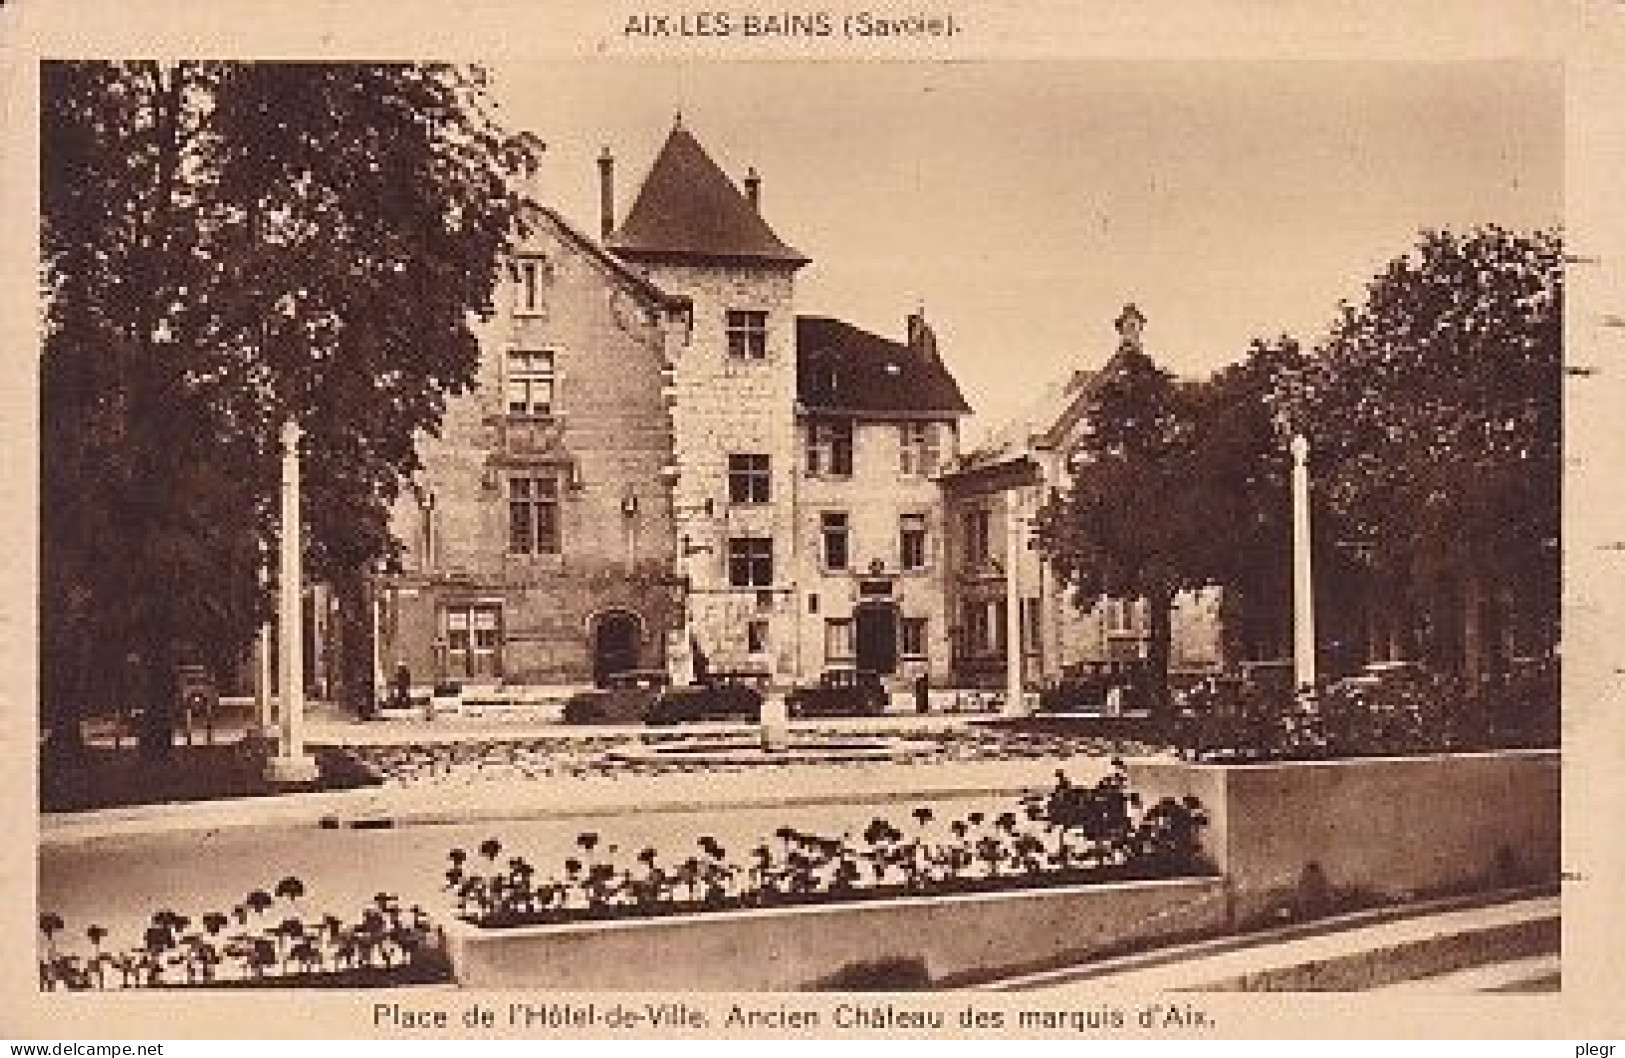 73008 01 47#0 - AIX LES BAINS - PLACE DE L'HÔTEL DE VILLE - ANCIEN CHÂTEAU DES MARQUIS D'AIX - Aix Les Bains